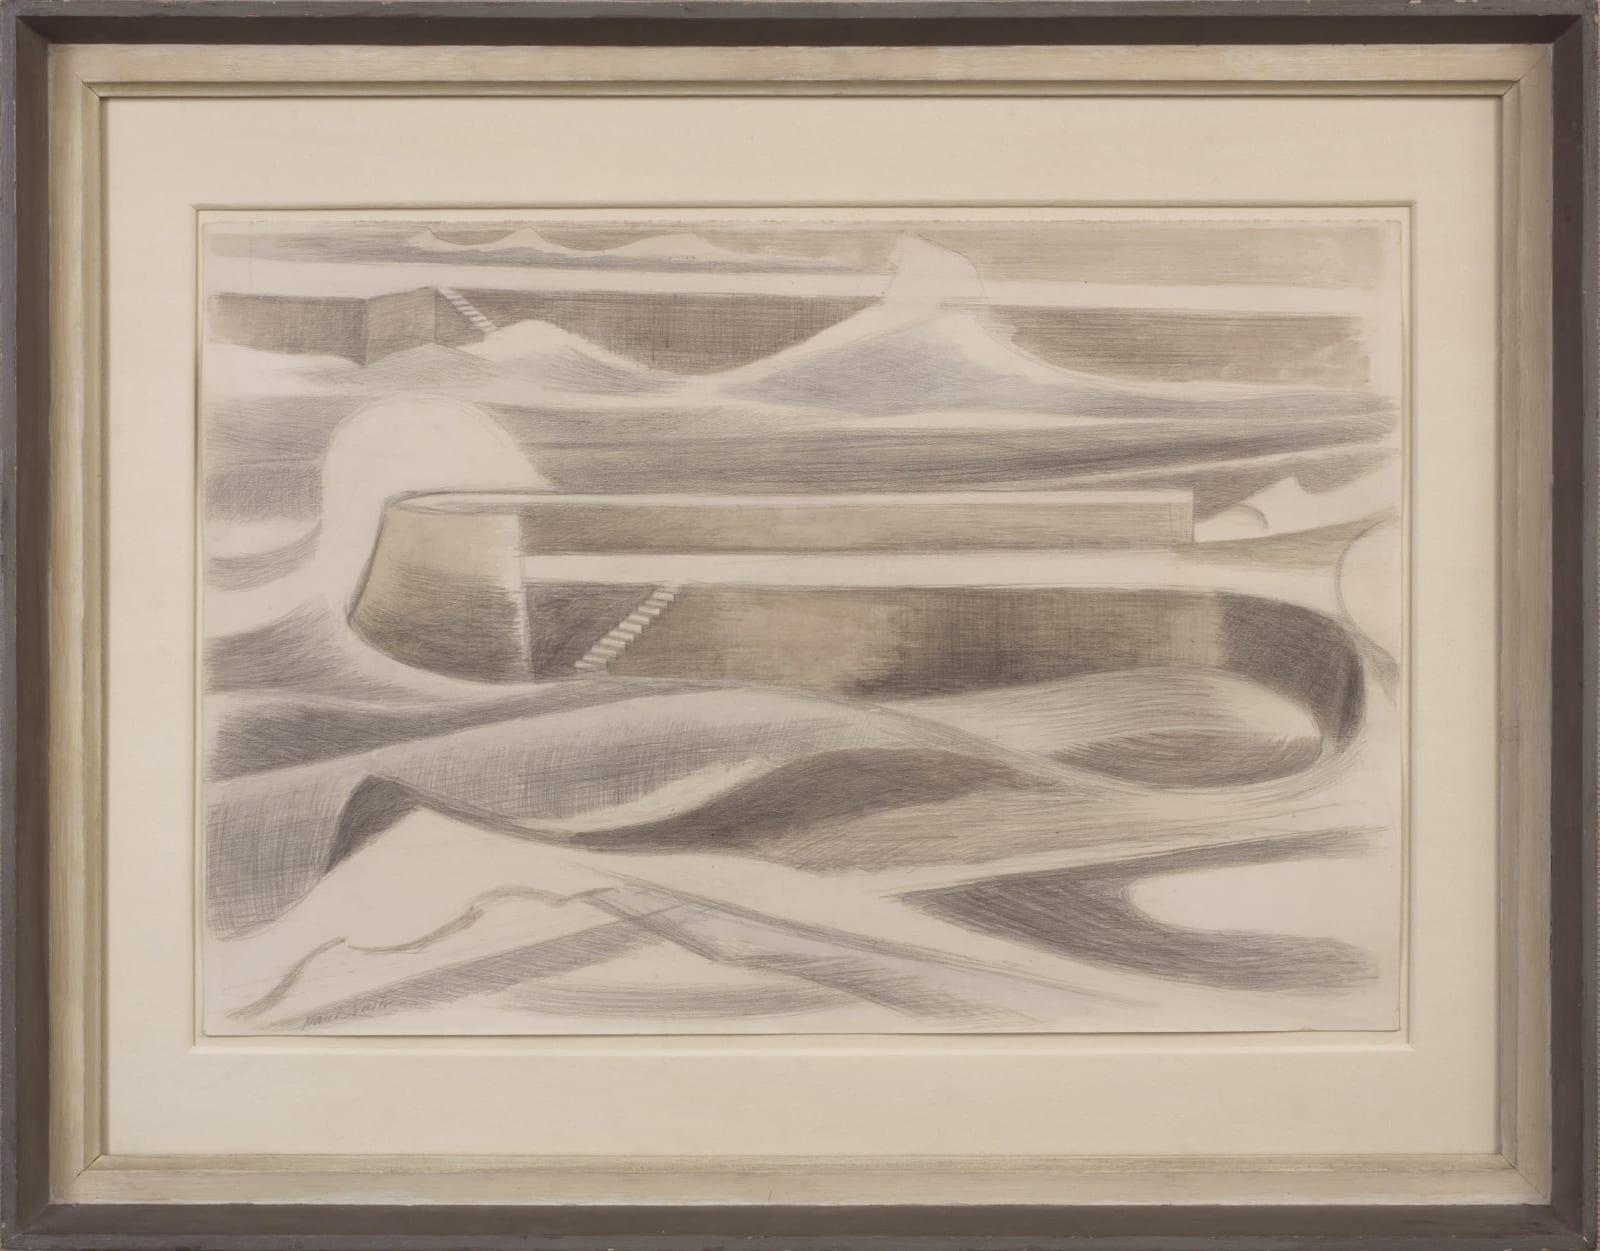 Paul Nash, Sea Wall, 1935